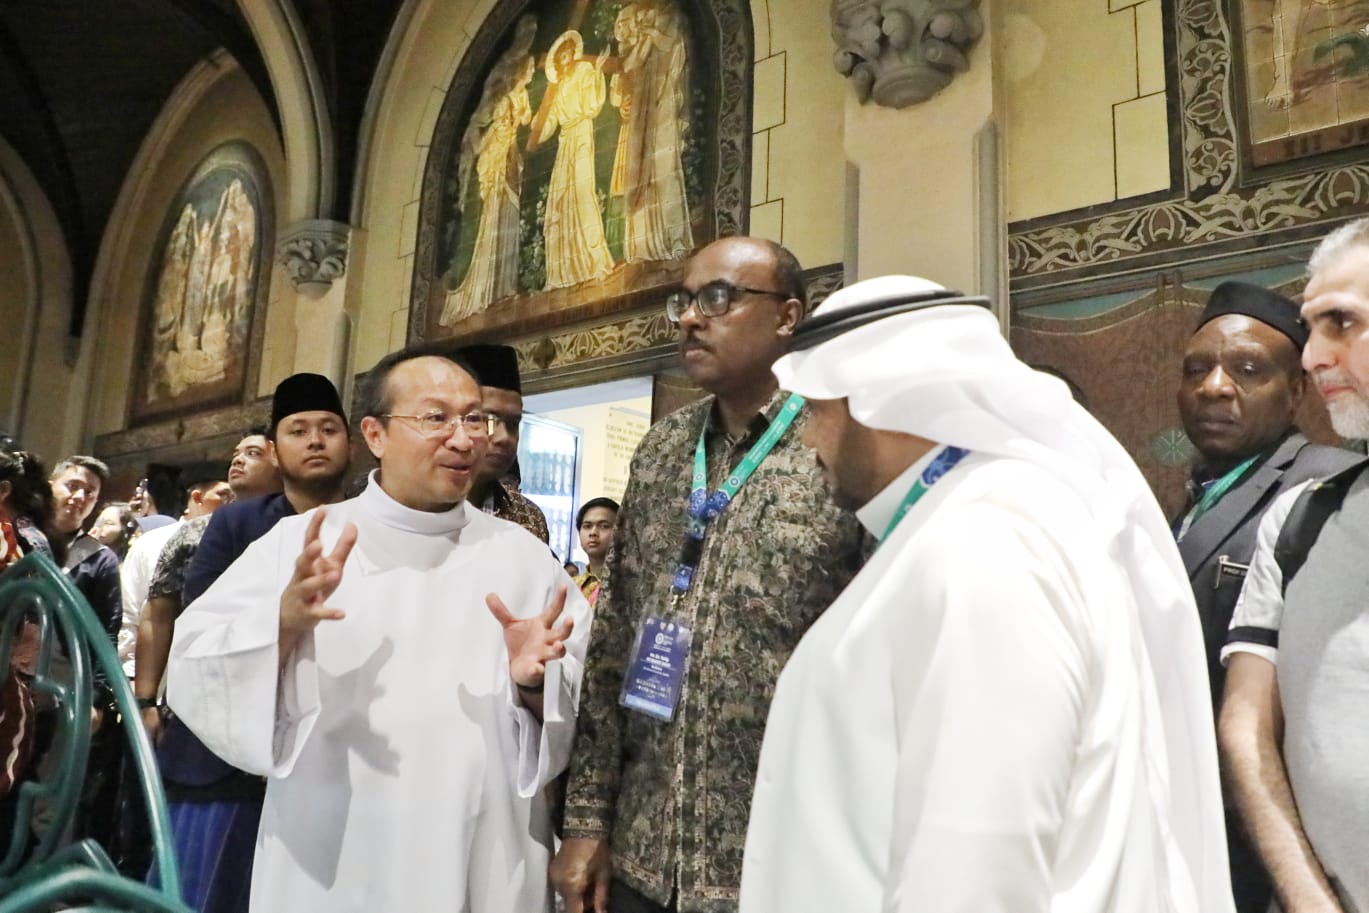 Usai Solat Jumat di Masjid Istiqlal dan Kunjungi Gereja Katedral, Sekjen OKI Terkesan Dengan Toleransi di Indonesia